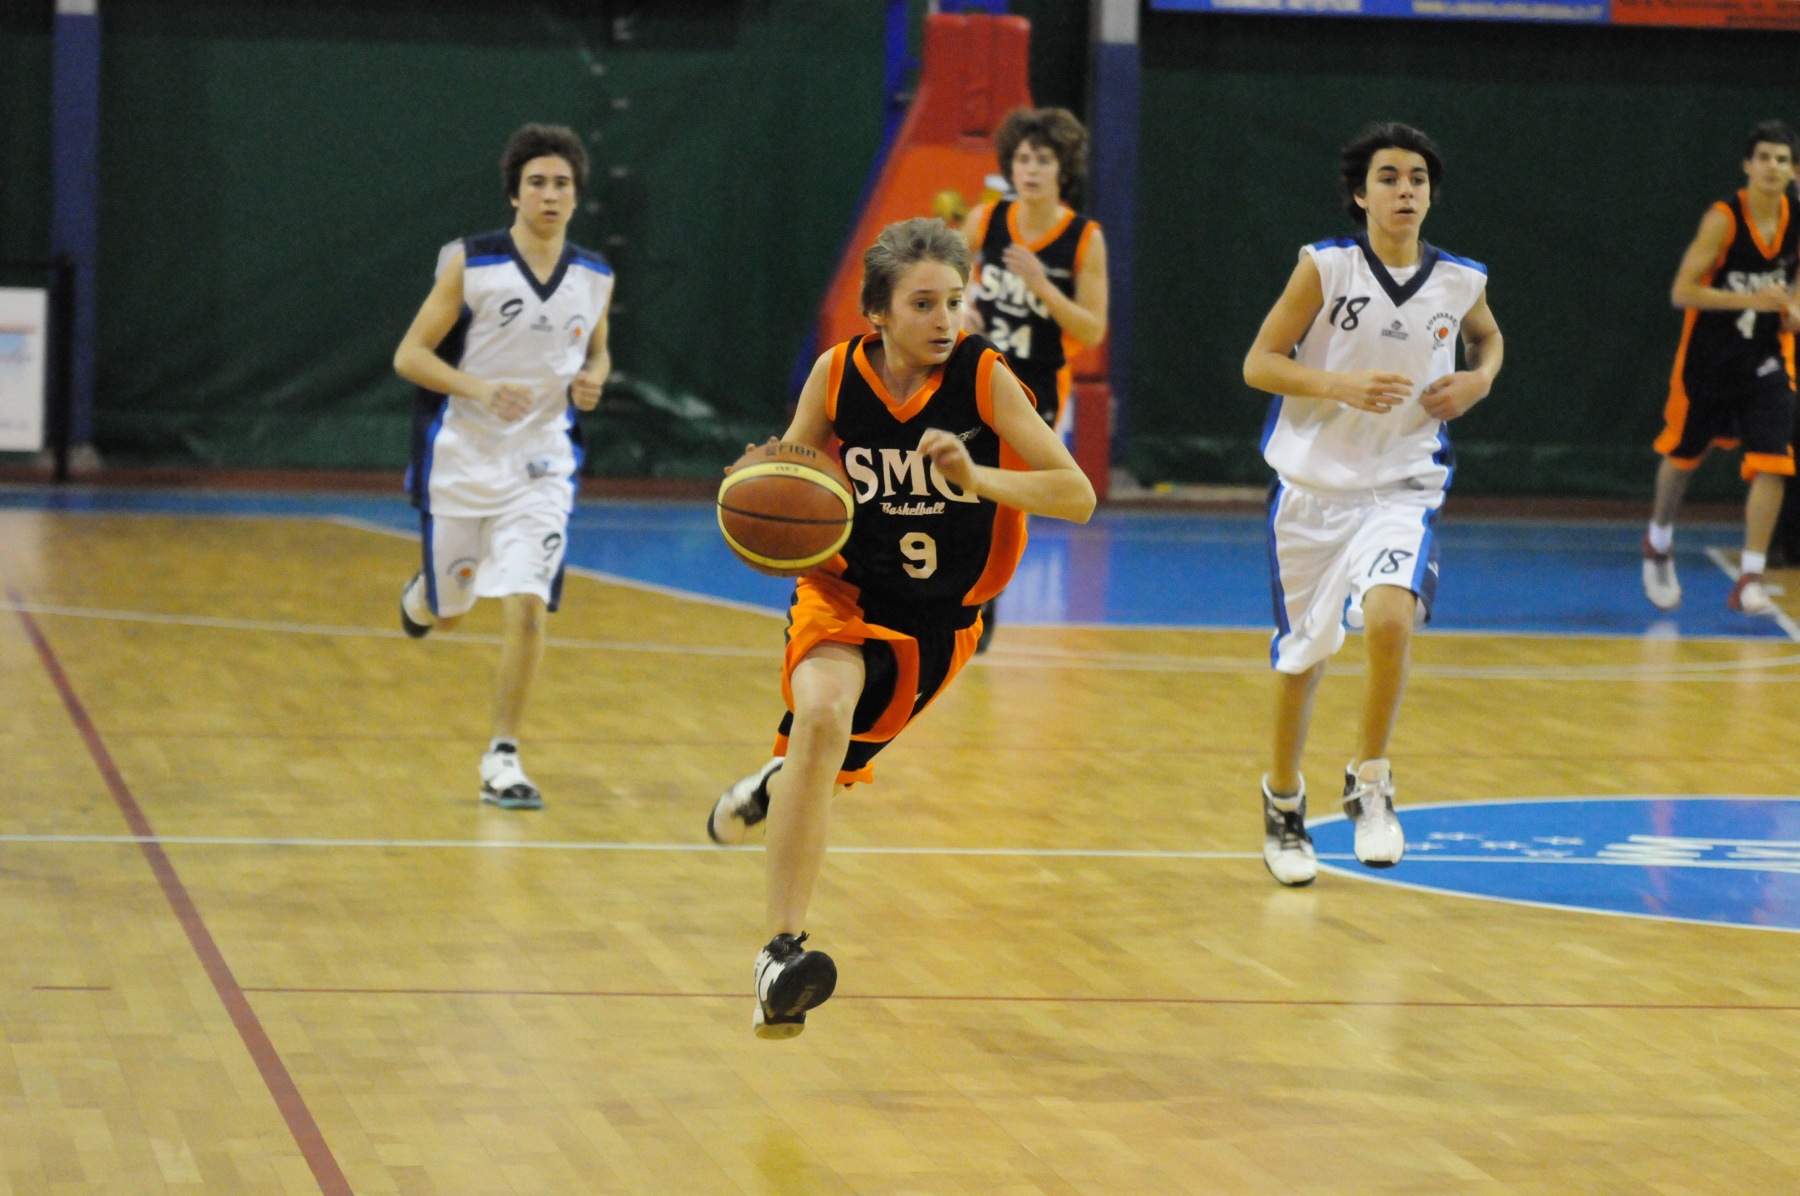 2010-02-20-U15Ecc-Eurobasket-SMG-290